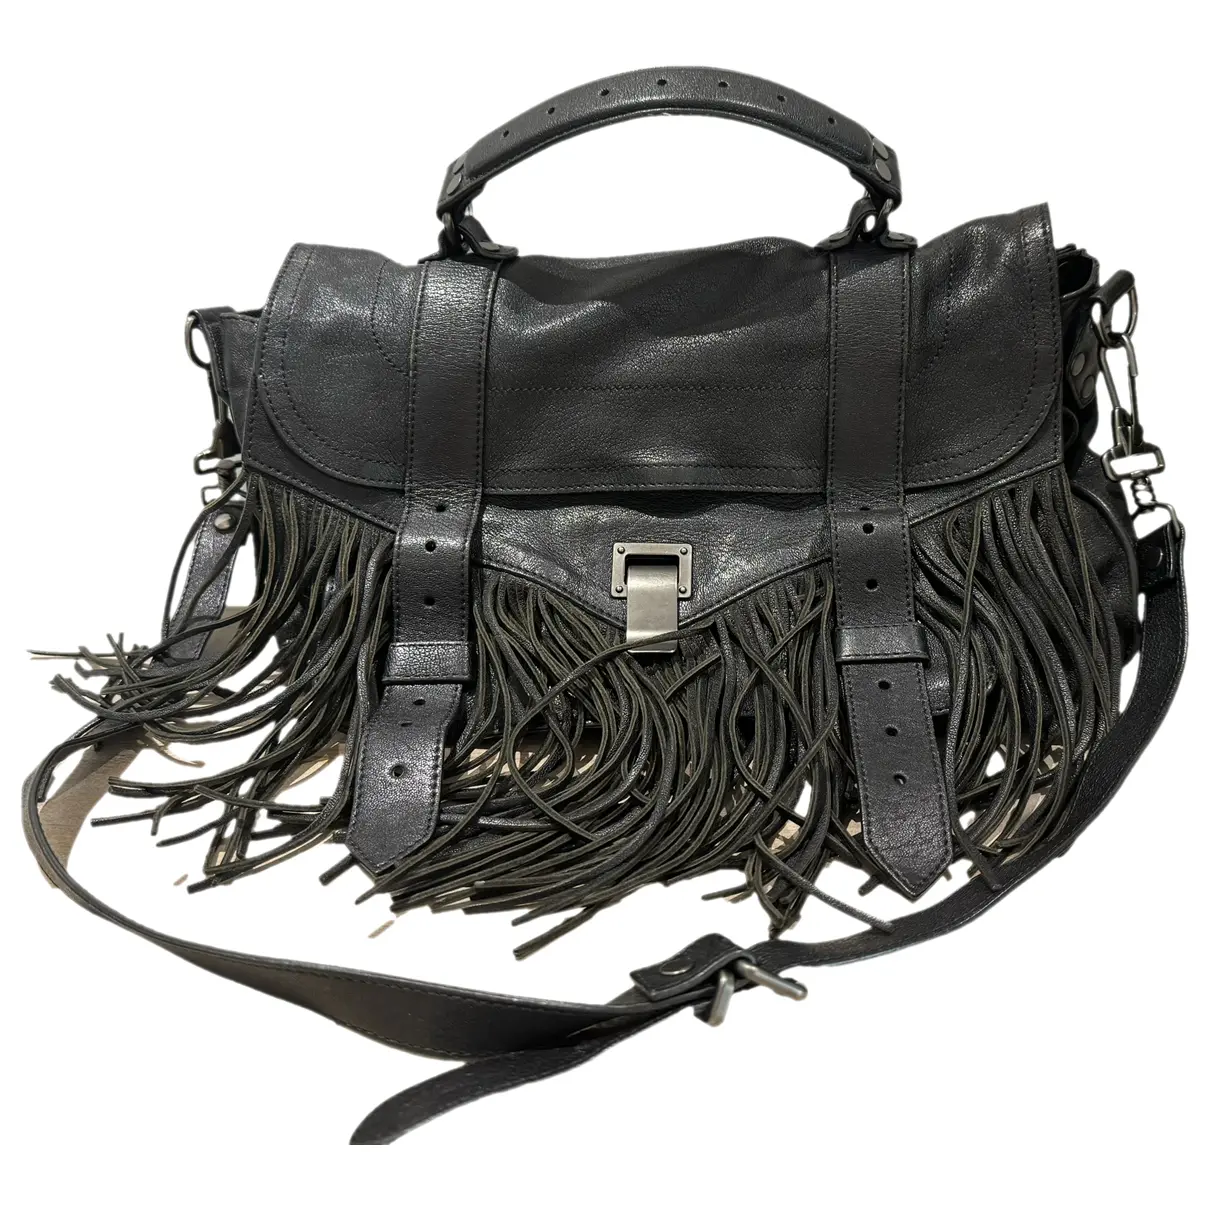 PS11 leather satchel Proenza Schouler